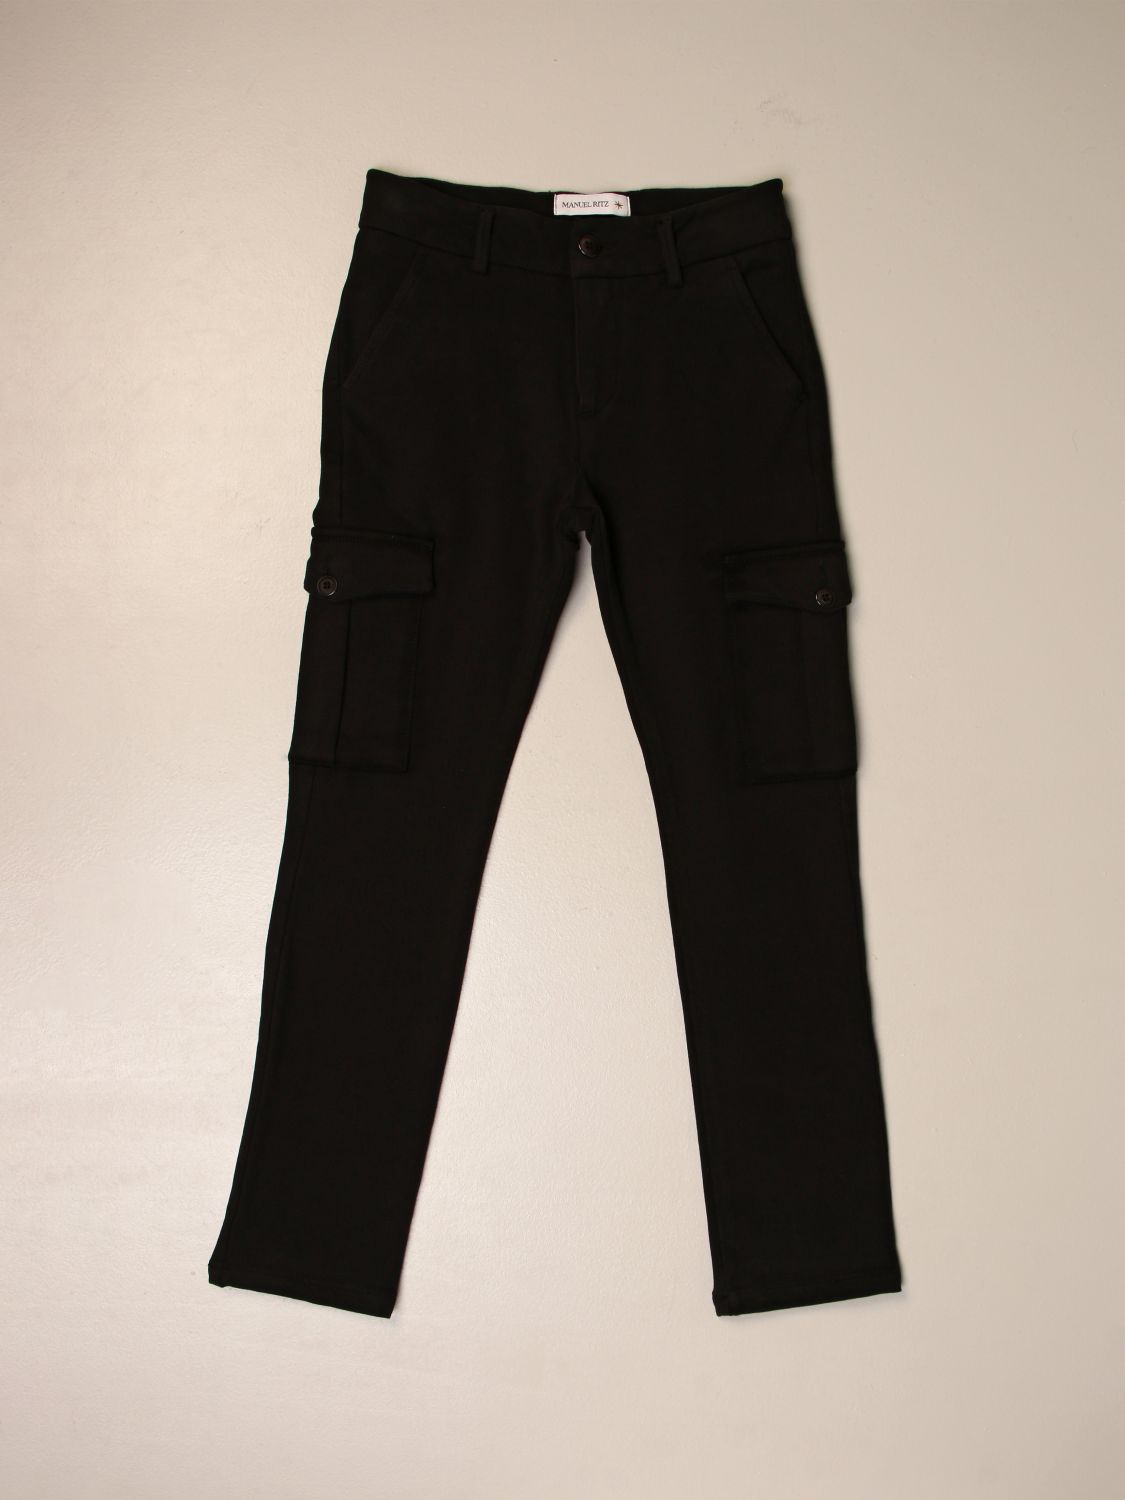 Pantalone in cotone stretch Giglio.com Bambino Abbigliamento Pantaloni e jeans Pantaloni Pantaloni stretch 